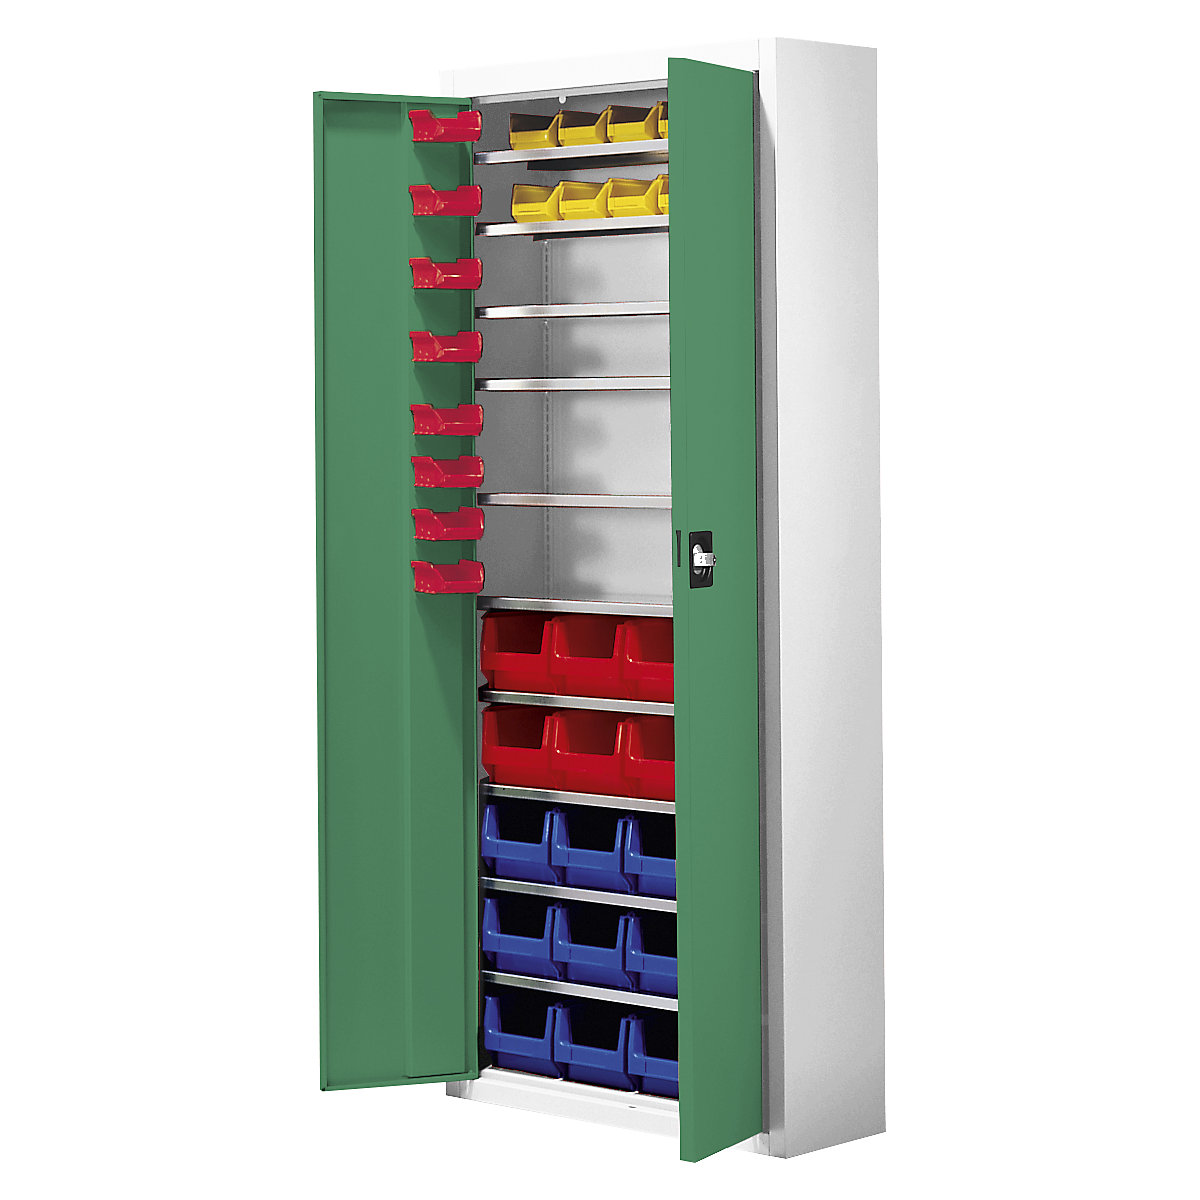 Armario-almacén con cajas visualizables – mauser, H x A x P 1740 x 680 x 280 mm, 48 cajas, bicolor, cuerpo gris, puertas en verde-3